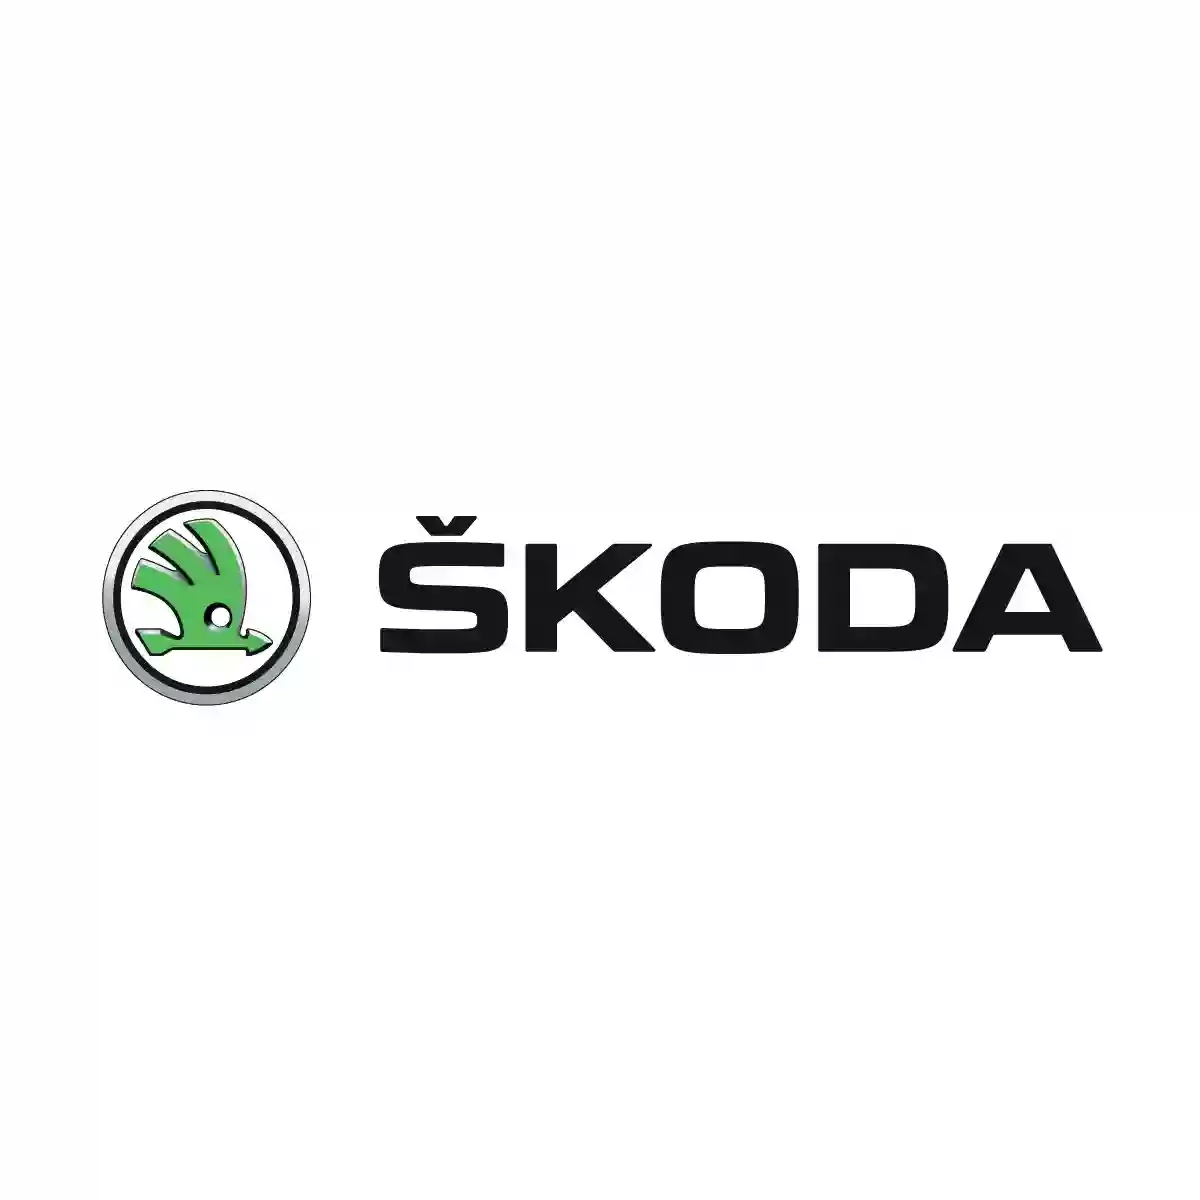 Автоинтерсервис - официальный дилер Škoda Auto в Украине